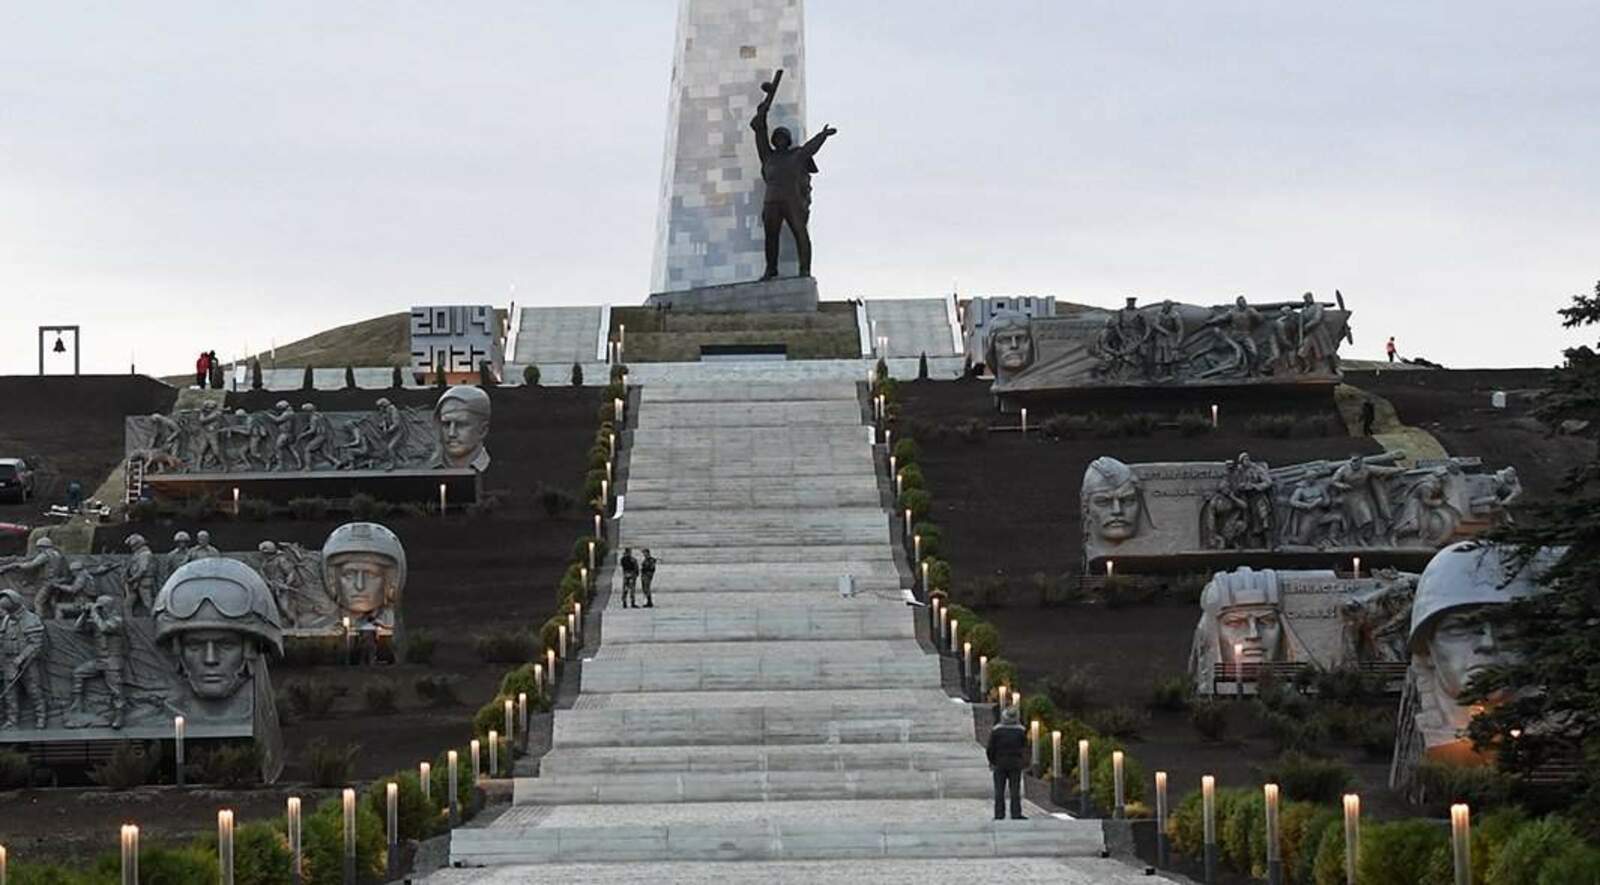 ДНРти "Саур-Масар" мемориаллă комплексне Владимир Путин хушнипе  юсанă